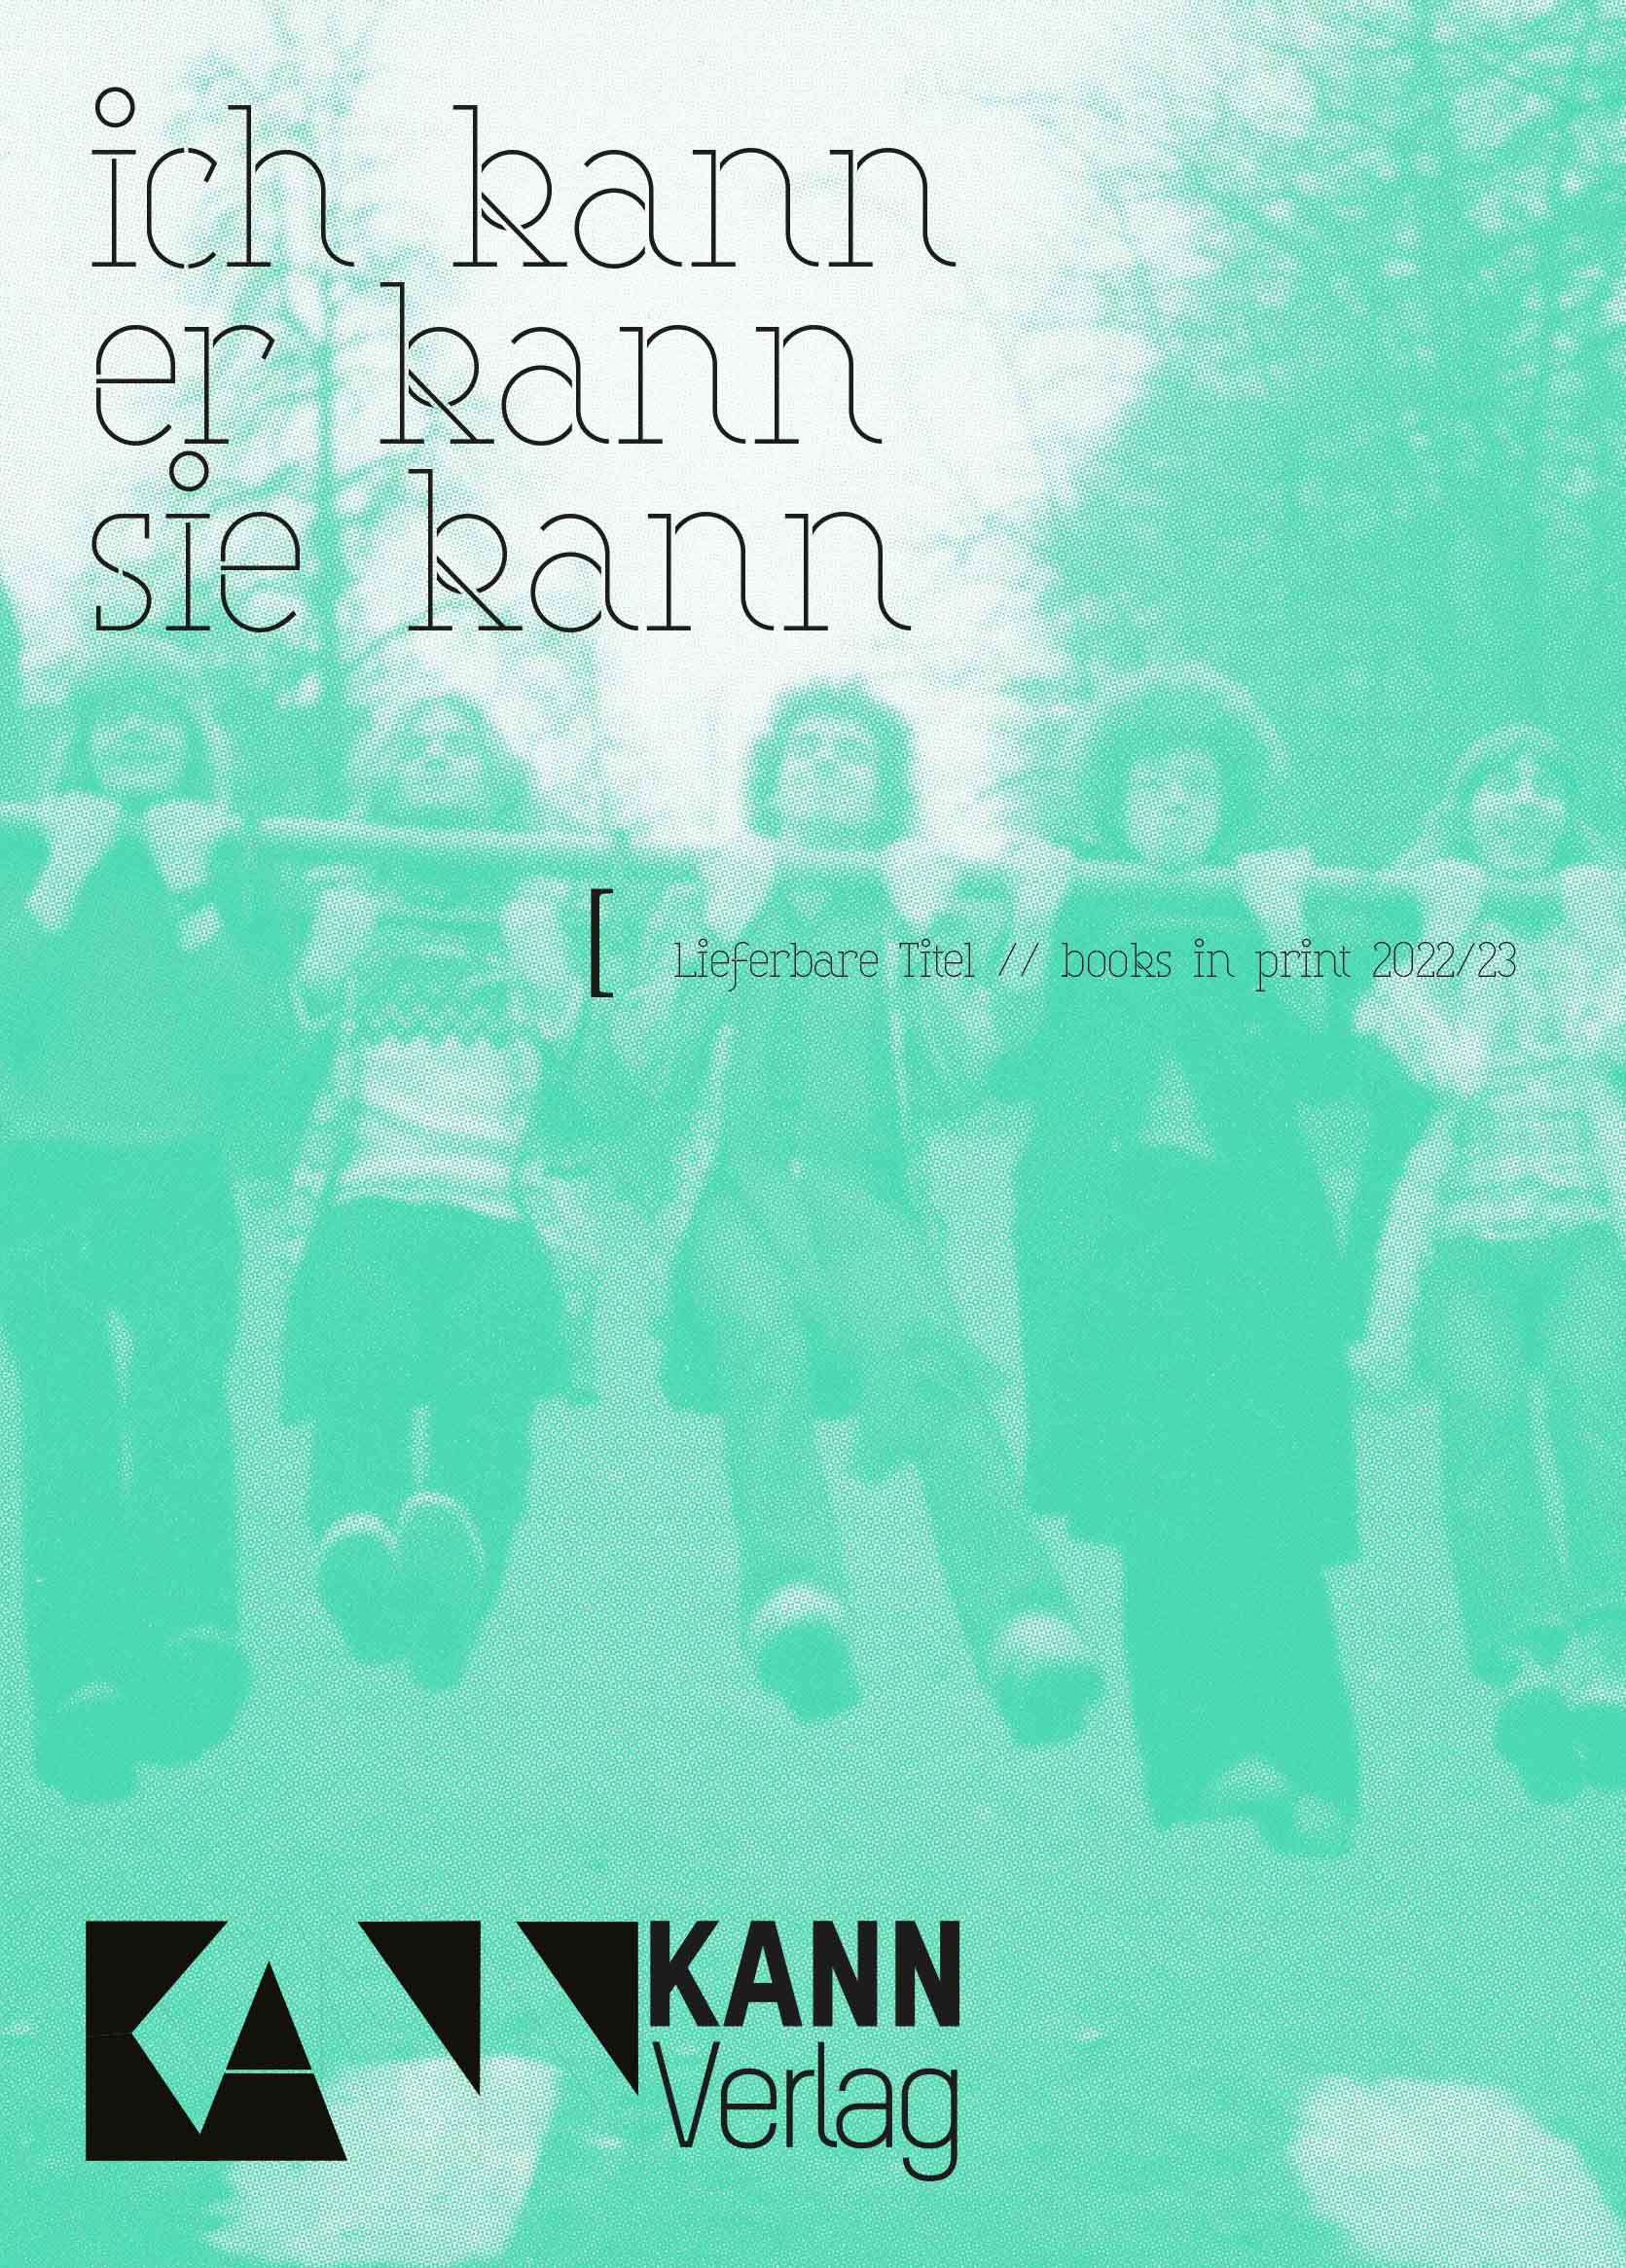 Flyer KANN Verlag green 23